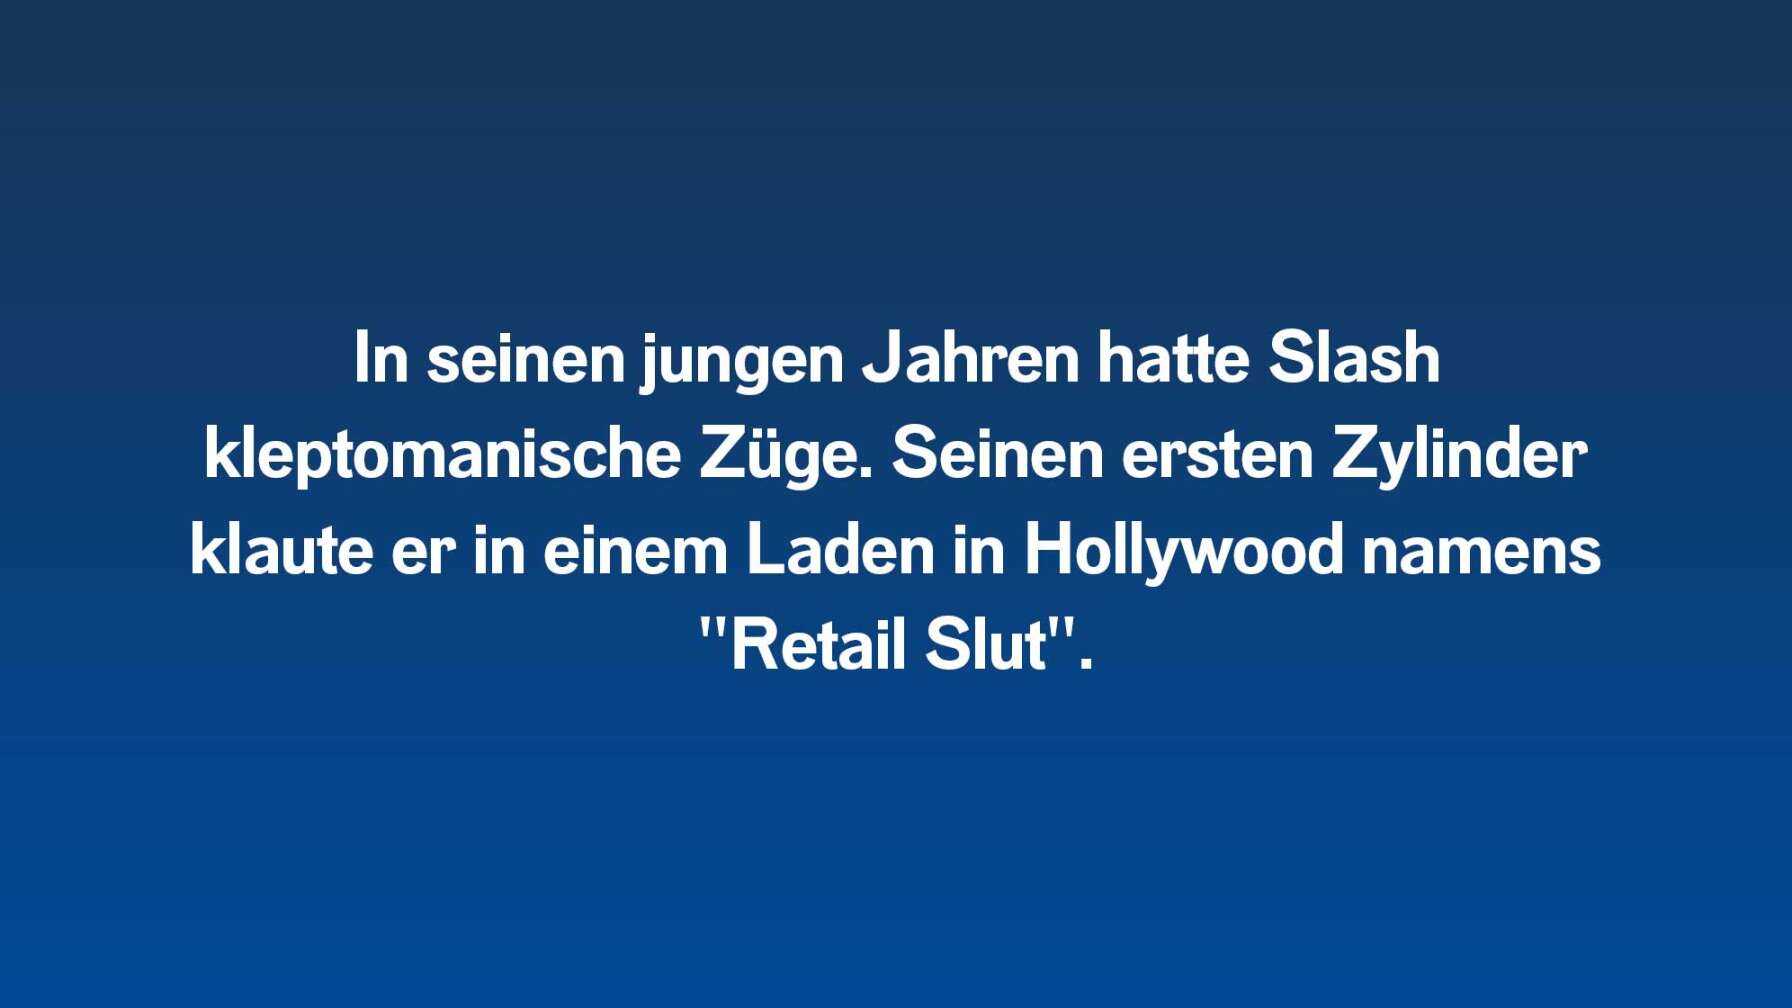 In seinen jungen Jahren hatte Slash kleptomanische Züge. Seinen ersten Zylinder klaute er in einem Laden in Hollywood namens "Retail Slut".